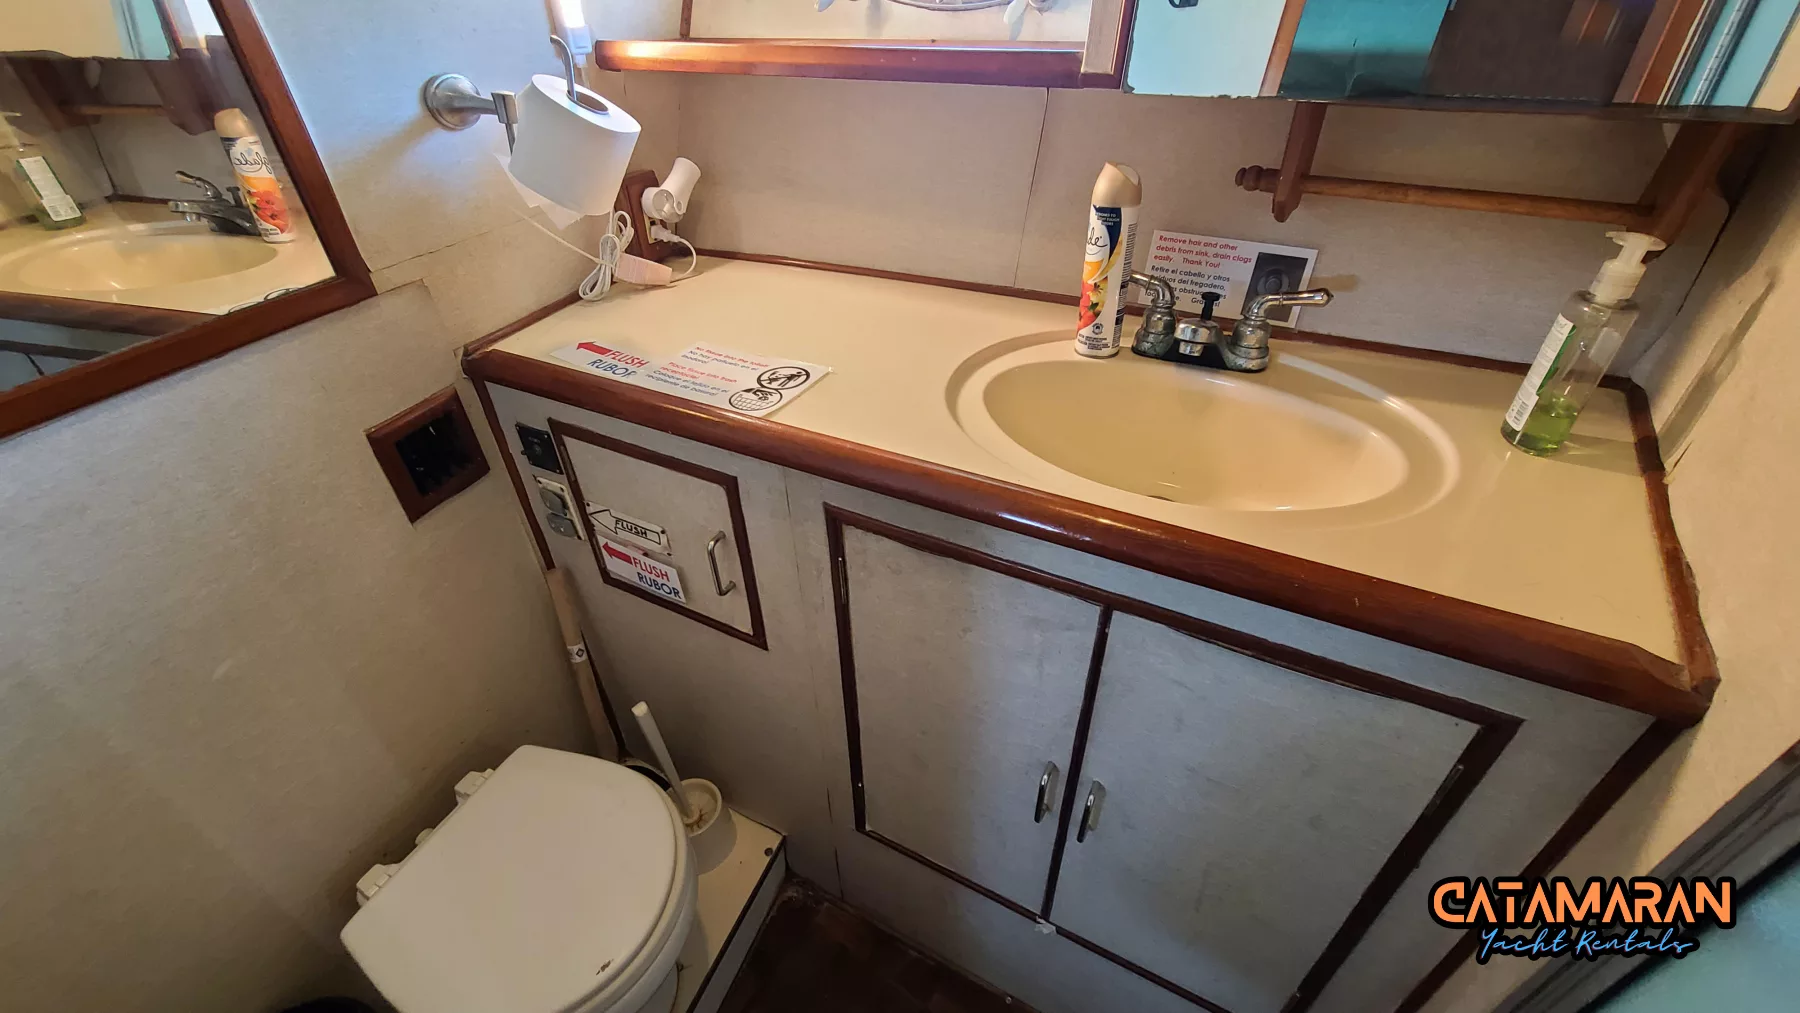 Yacht bathroom